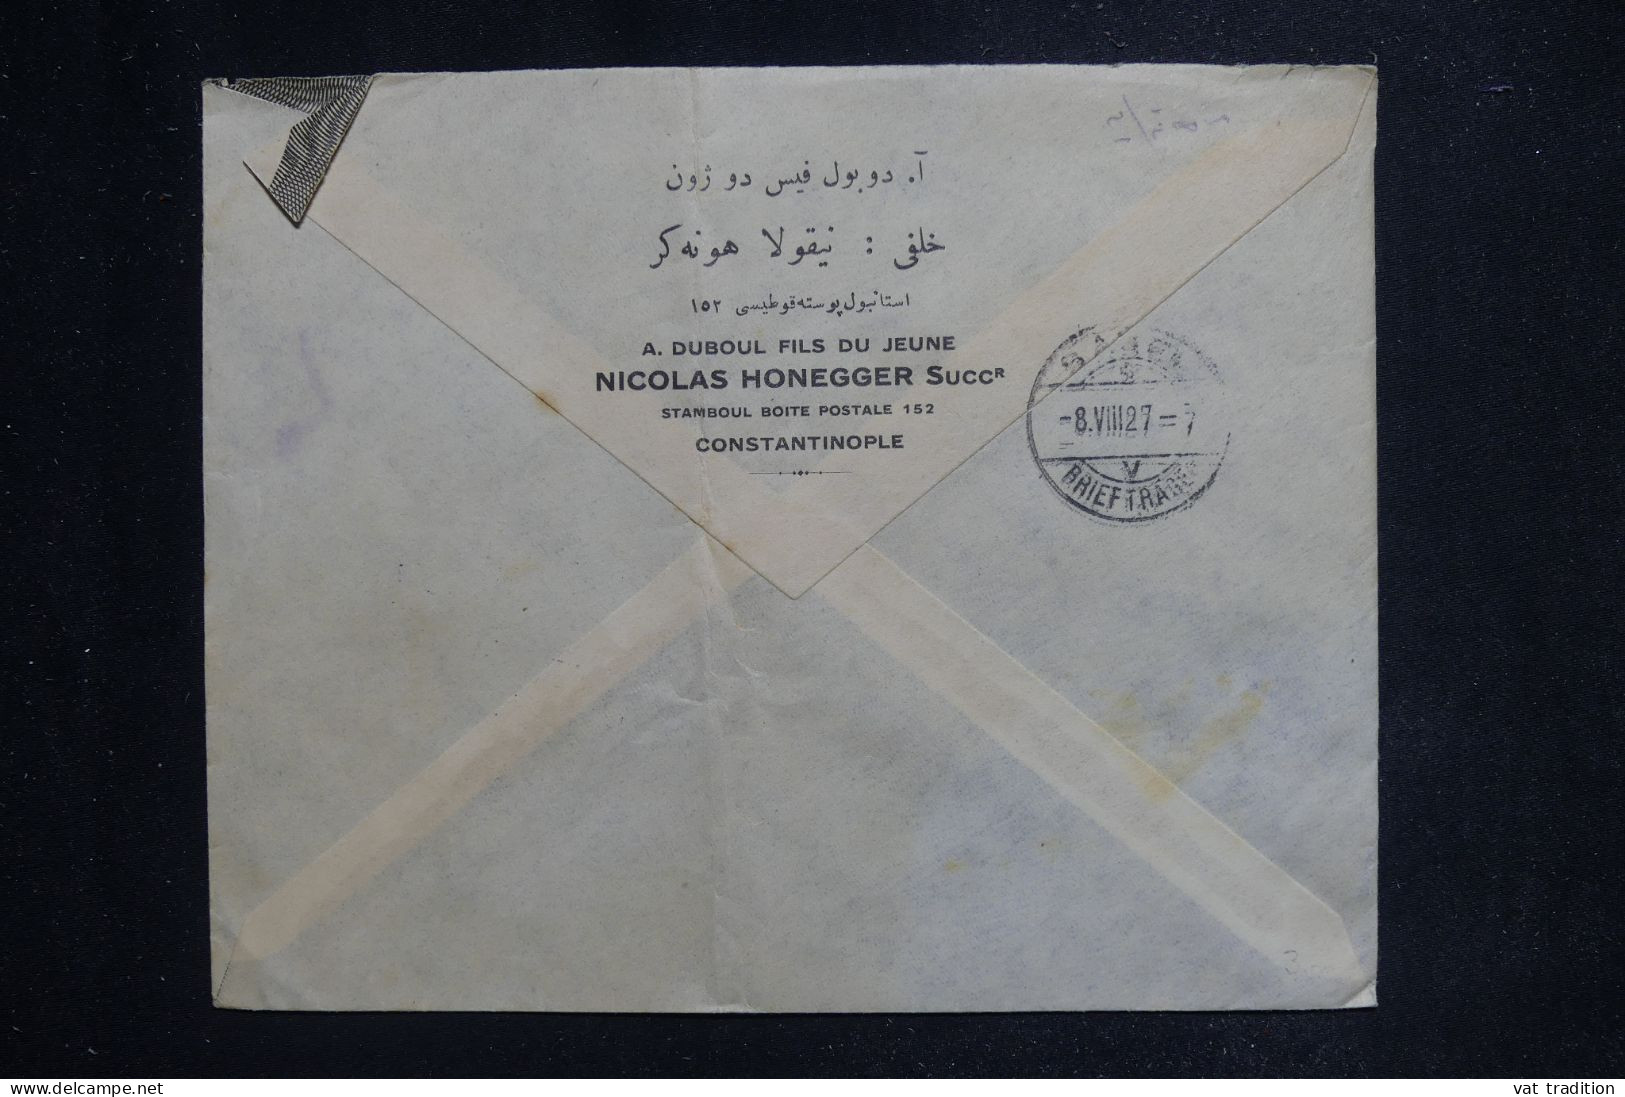 TURQUIE - Enveloppe  Commerciale En Recommandé De Istanbul Pour La Suisse En 1927 - L 144320 - Covers & Documents